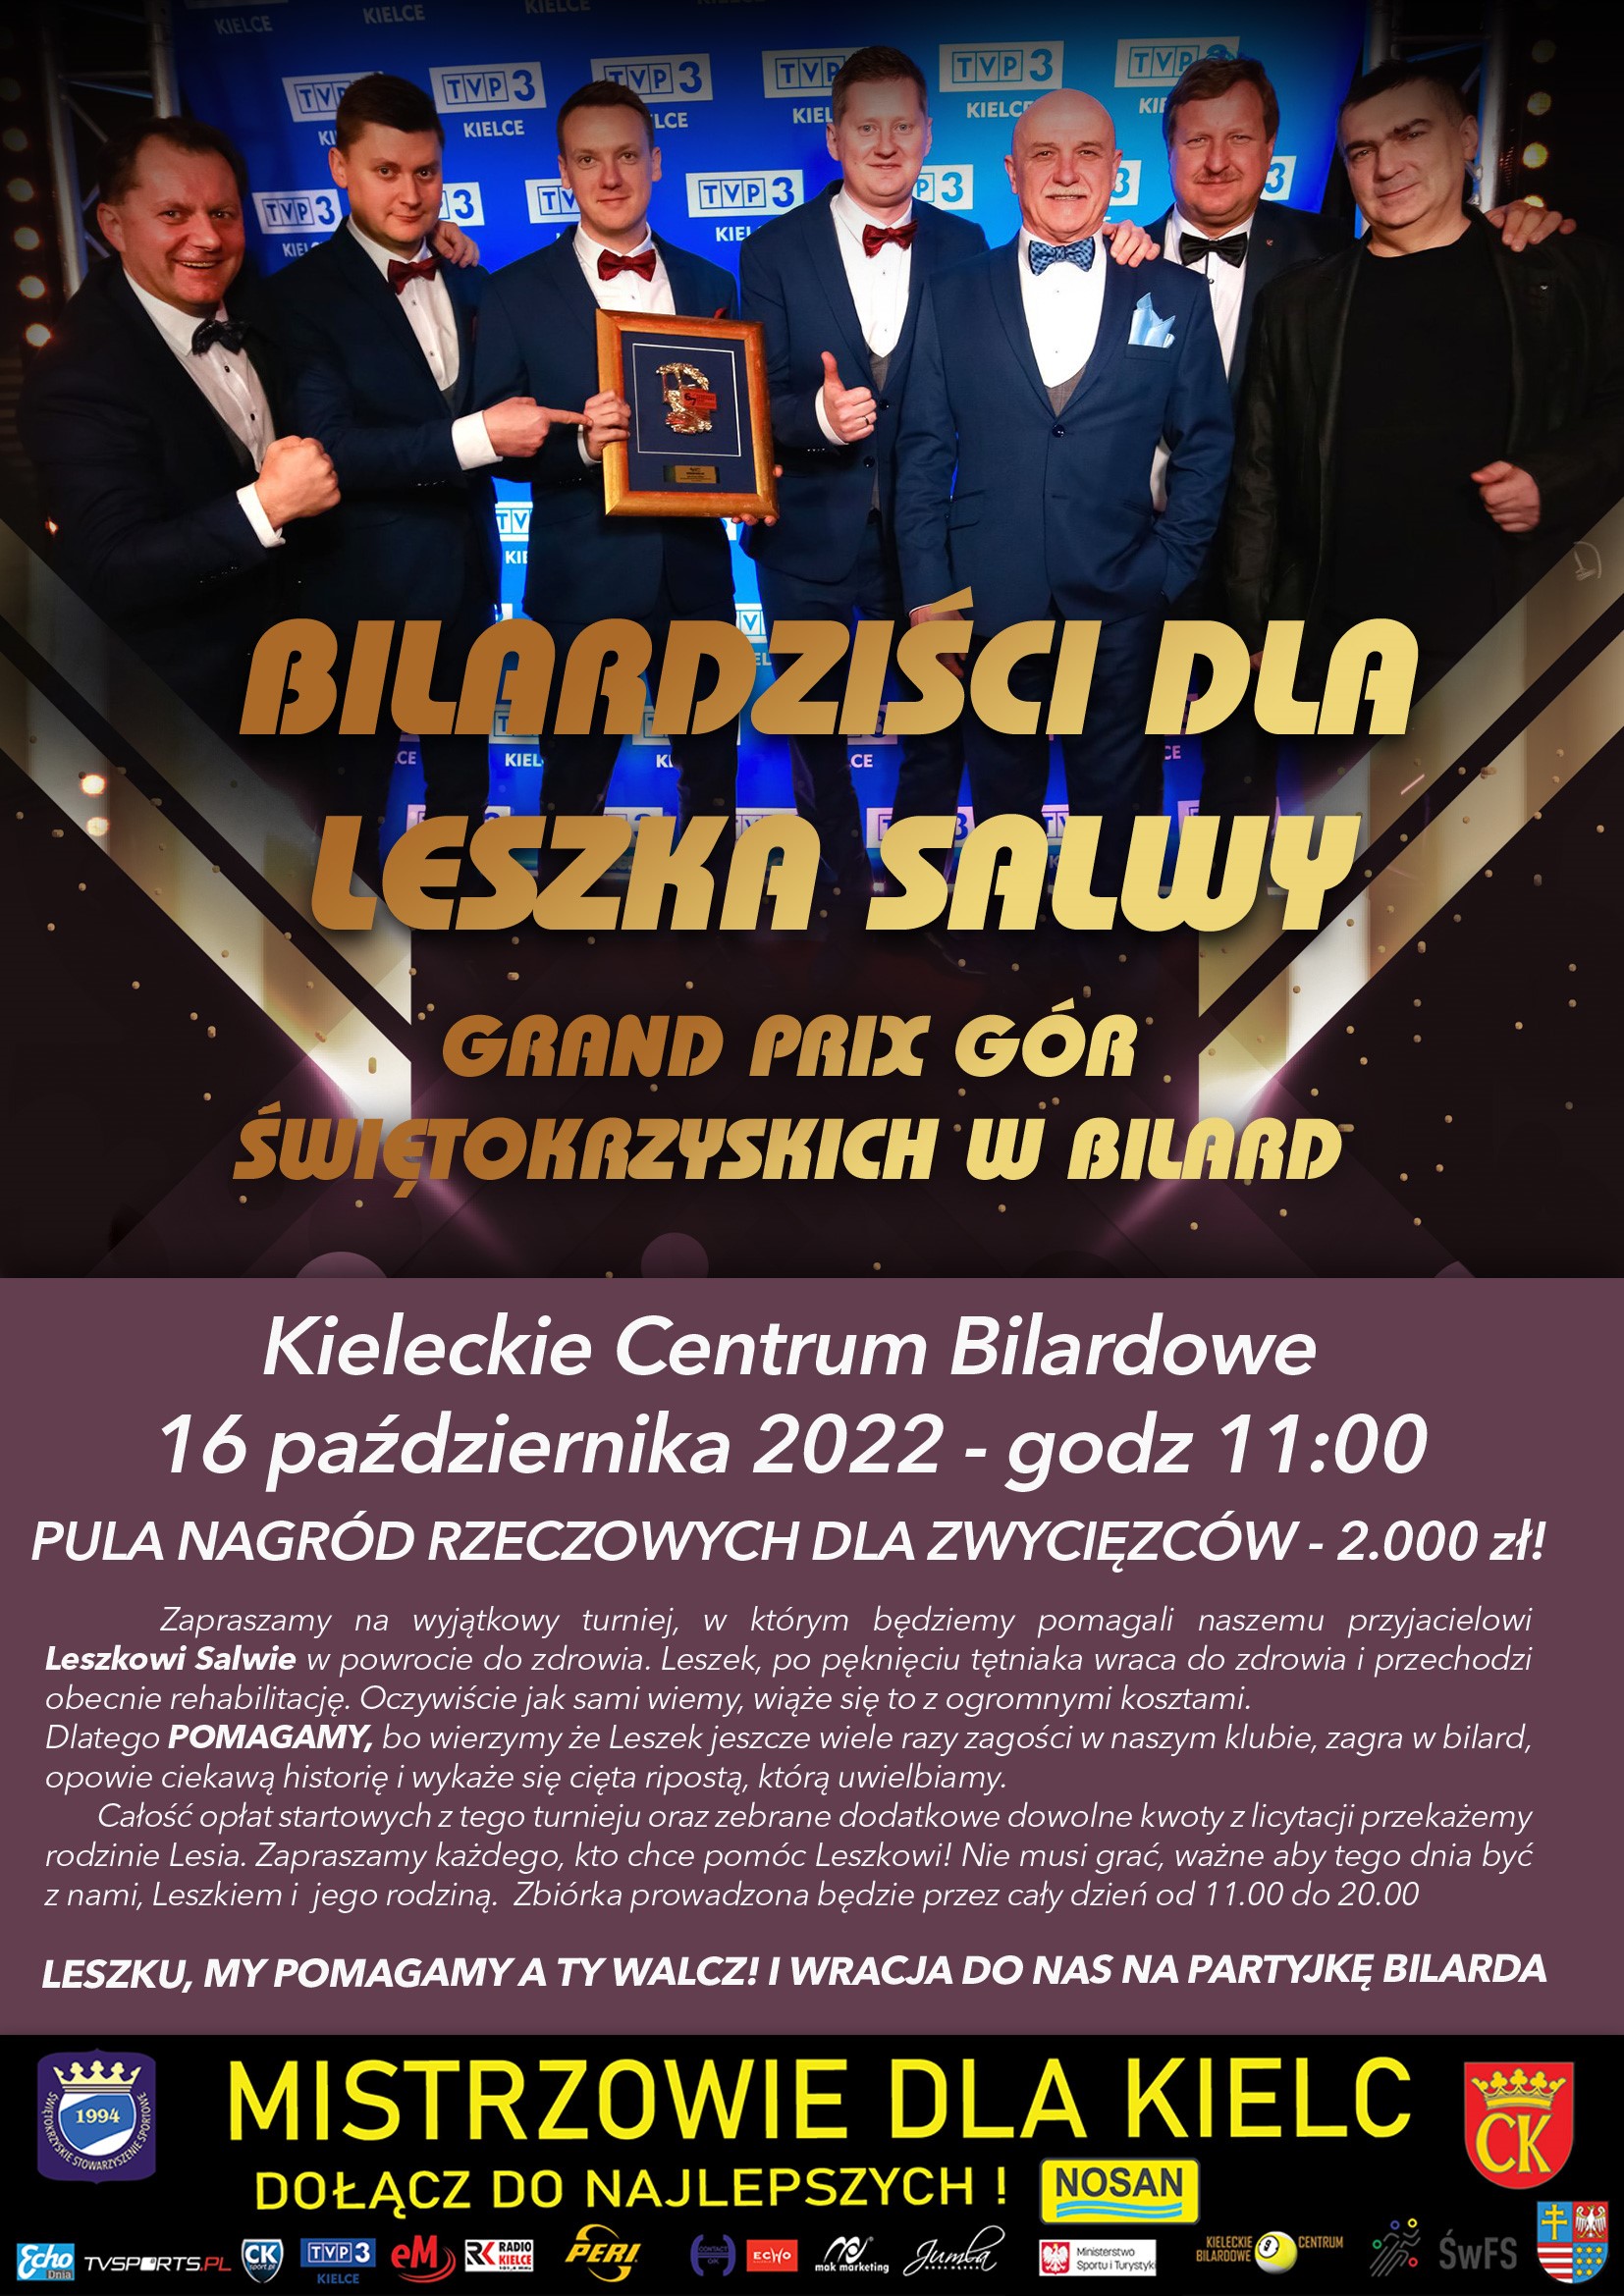 Bilardziści dla Leszka Salwy - Radio Kielce